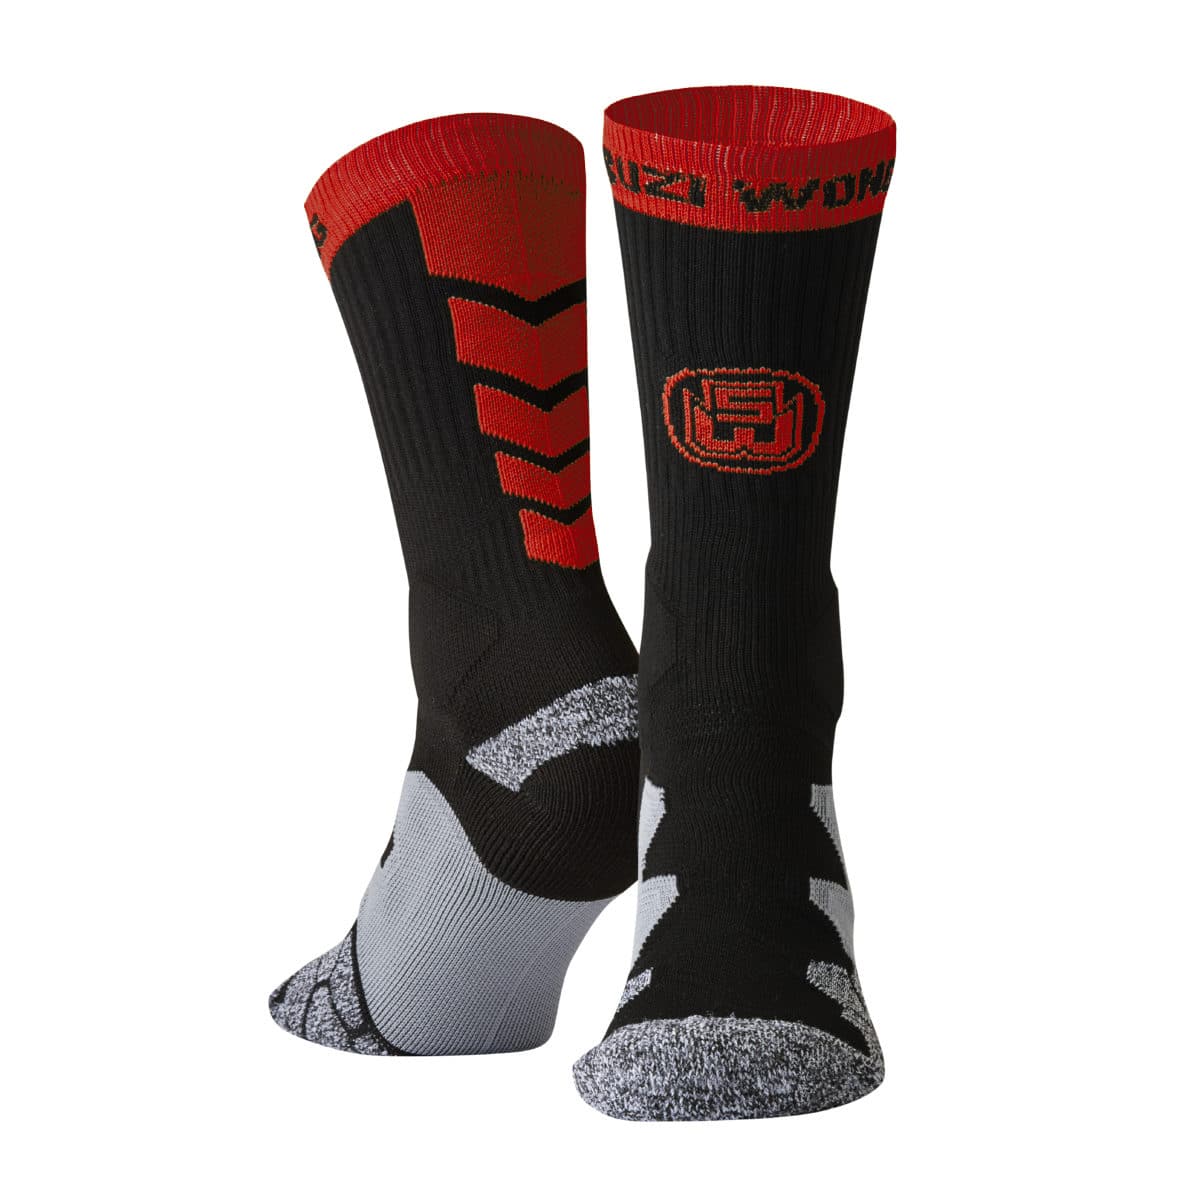 Suzi Wong Boxing Socks | Suzi Wong Creations Ltd